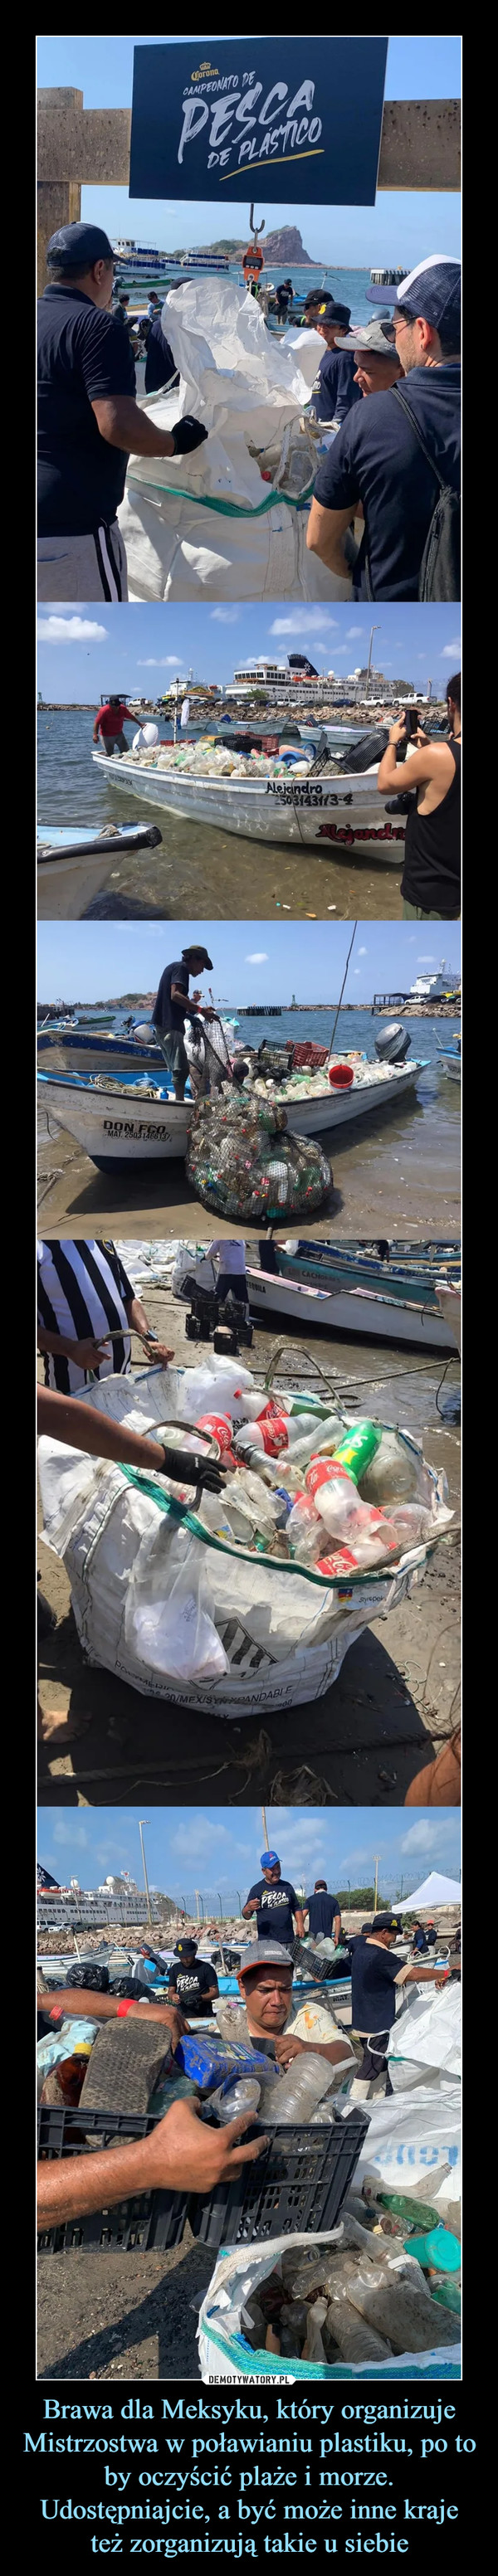 Brawa dla Meksyku, który organizuje Mistrzostwa w poławianiu plastiku, po to by oczyścić plaże i morze. Udostępniajcie, a być może inne kraje też zorganizują takie u siebie